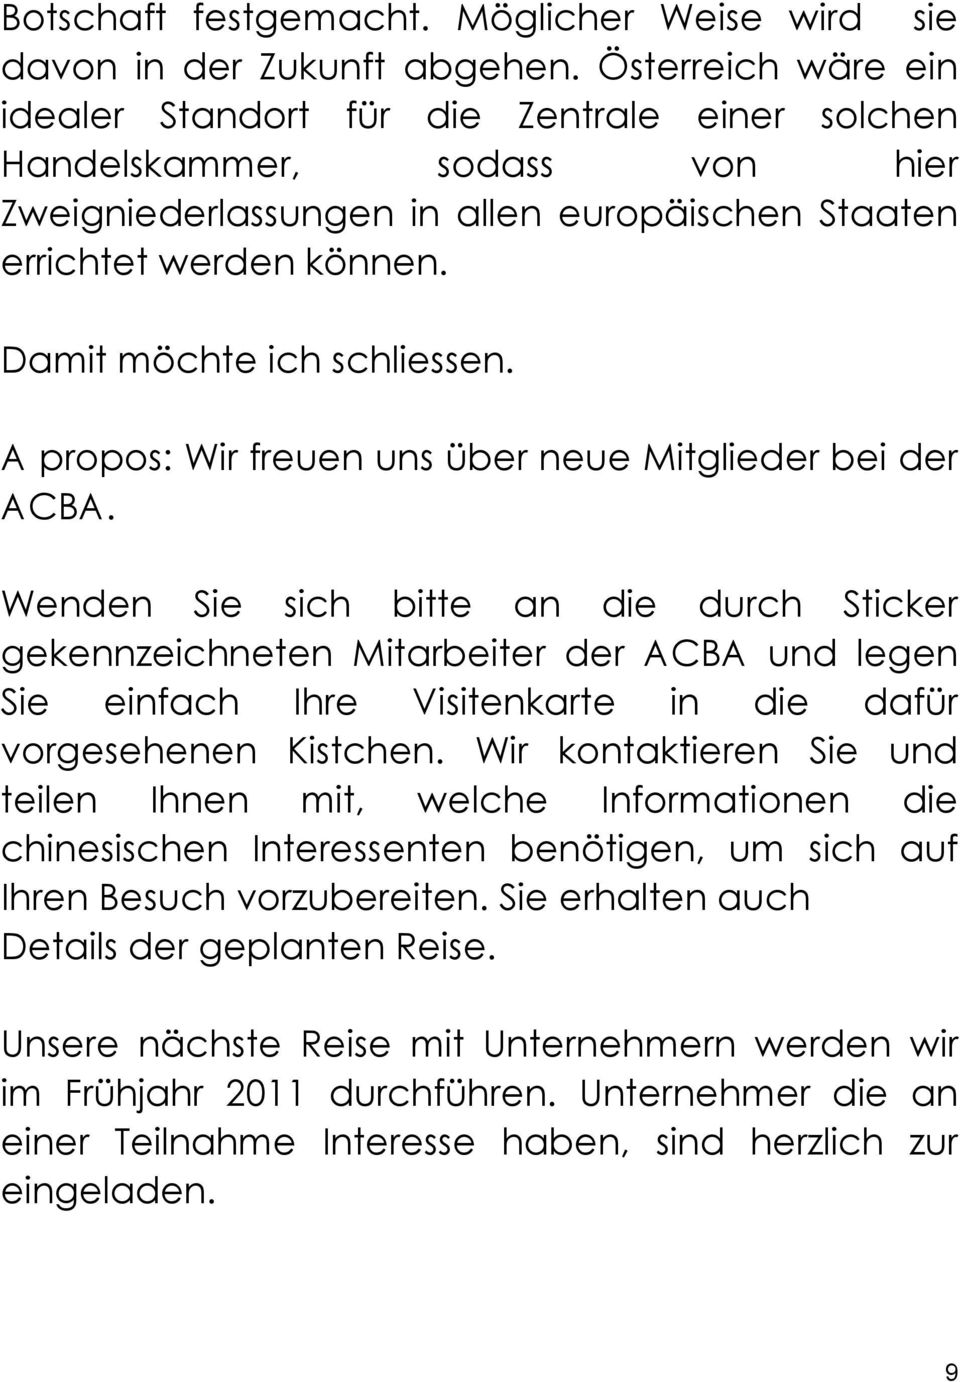 Damit möchte ich schliessen. A propos: Wir freuen uns über neue Mitglieder bei der ACBA.